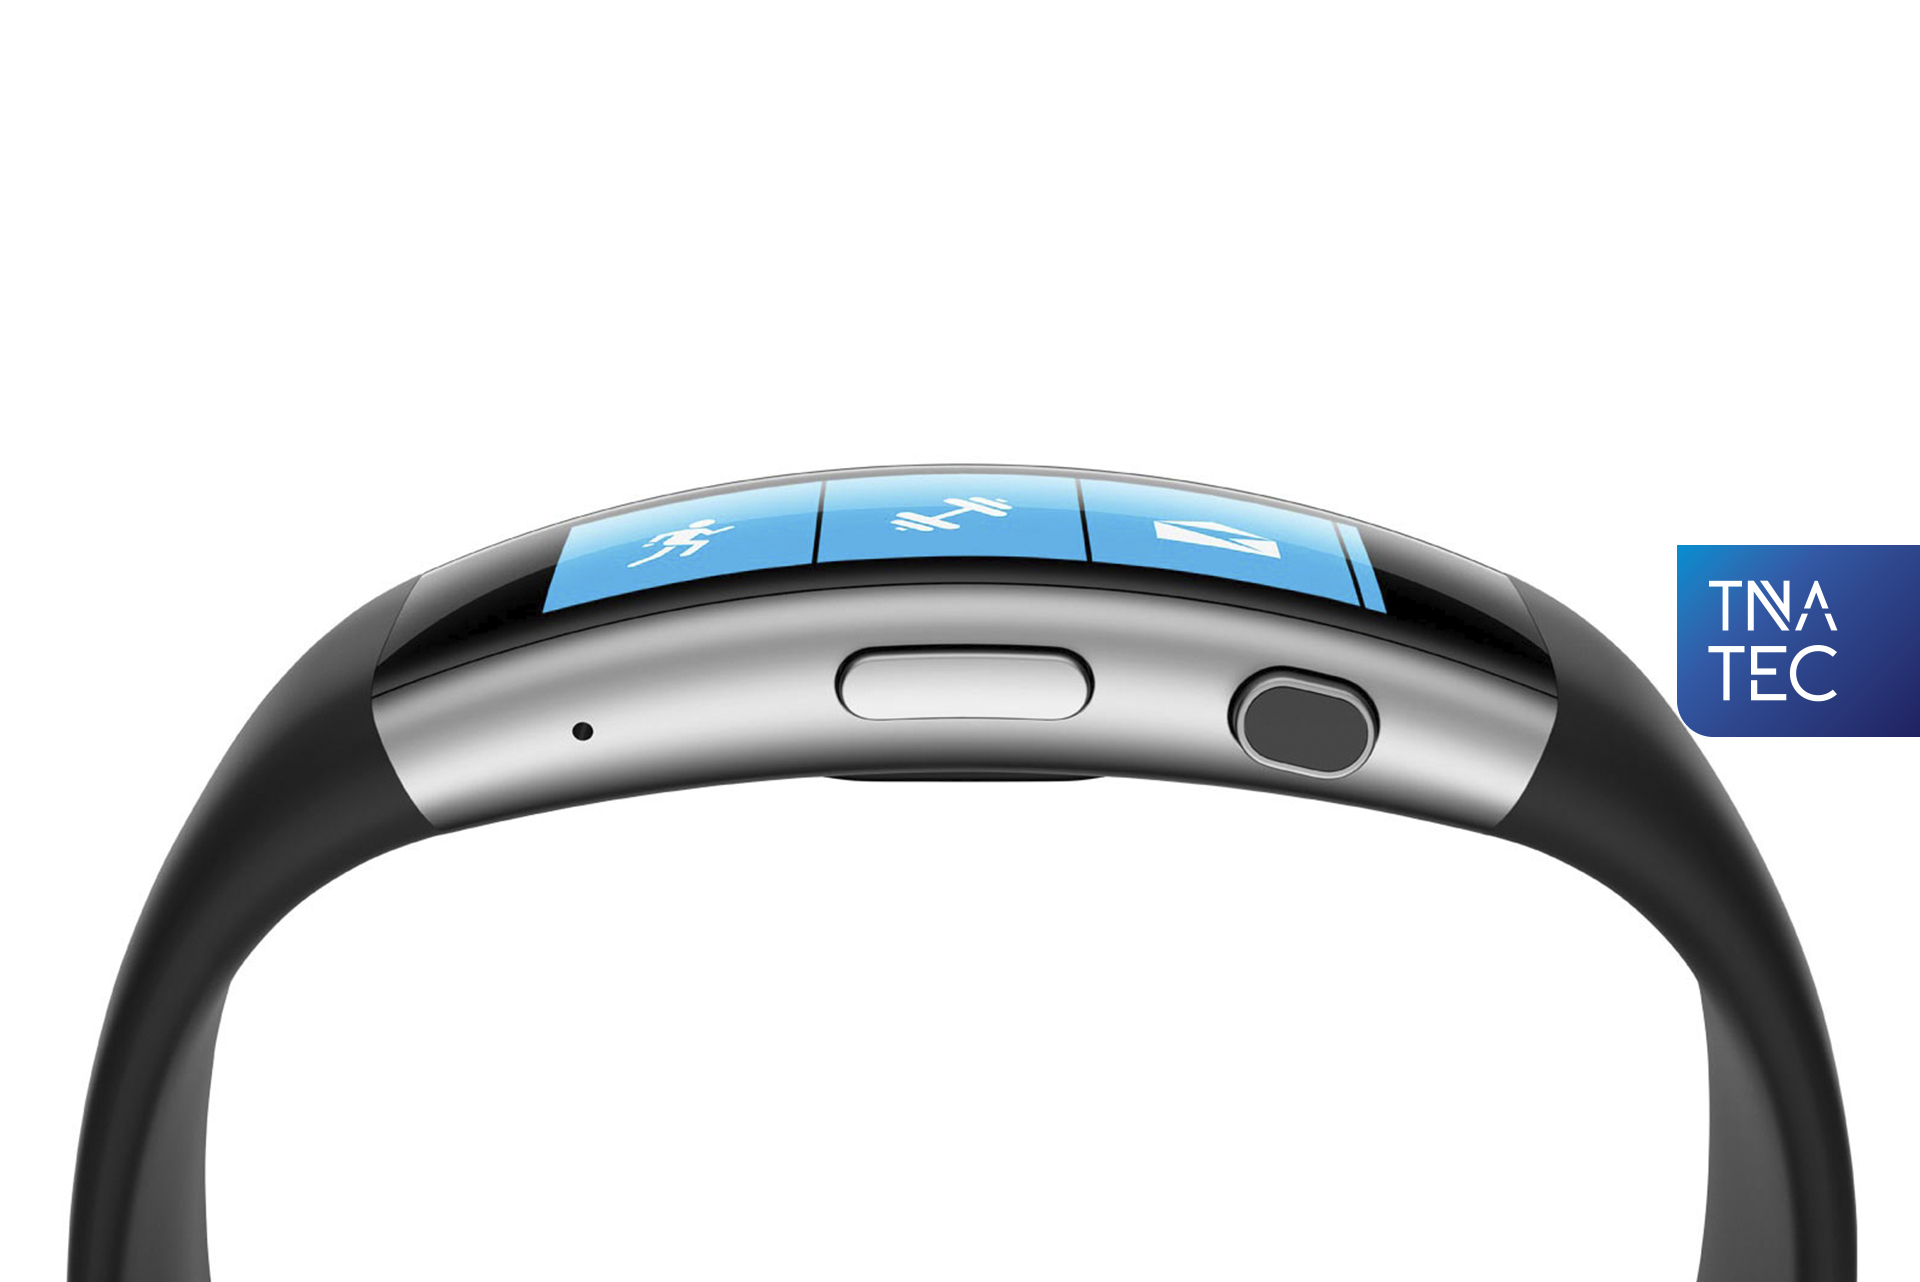 El brazalete de Microsoft monitorea la velocidad, la frecuencia cardiaca y la temperatura de los usuarios.